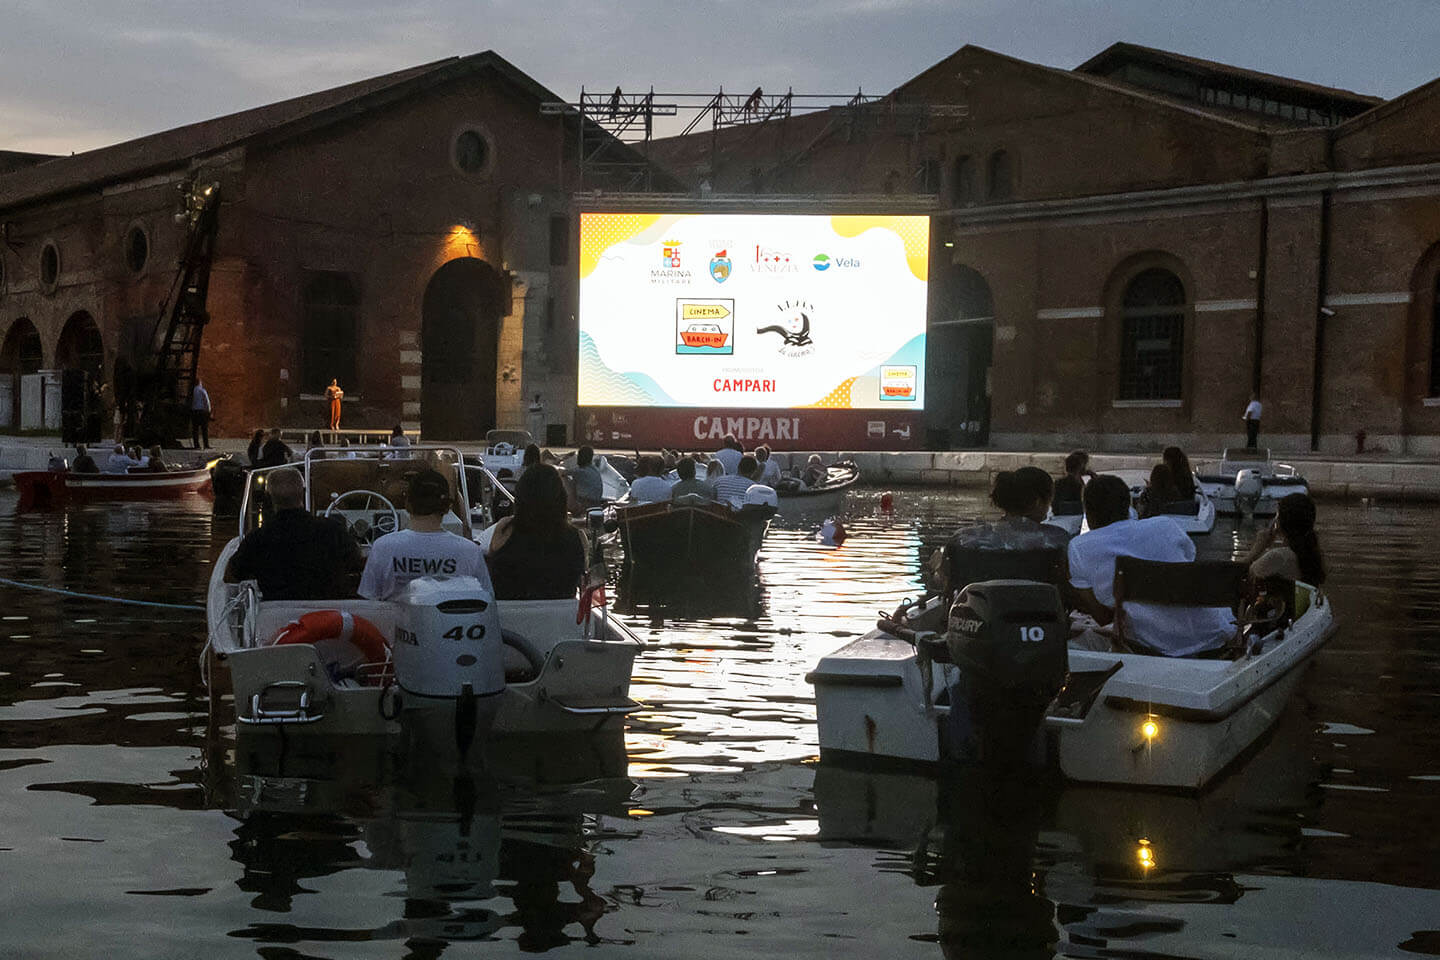 Das Cinema Barch-in, das erste Bootskino Italiens